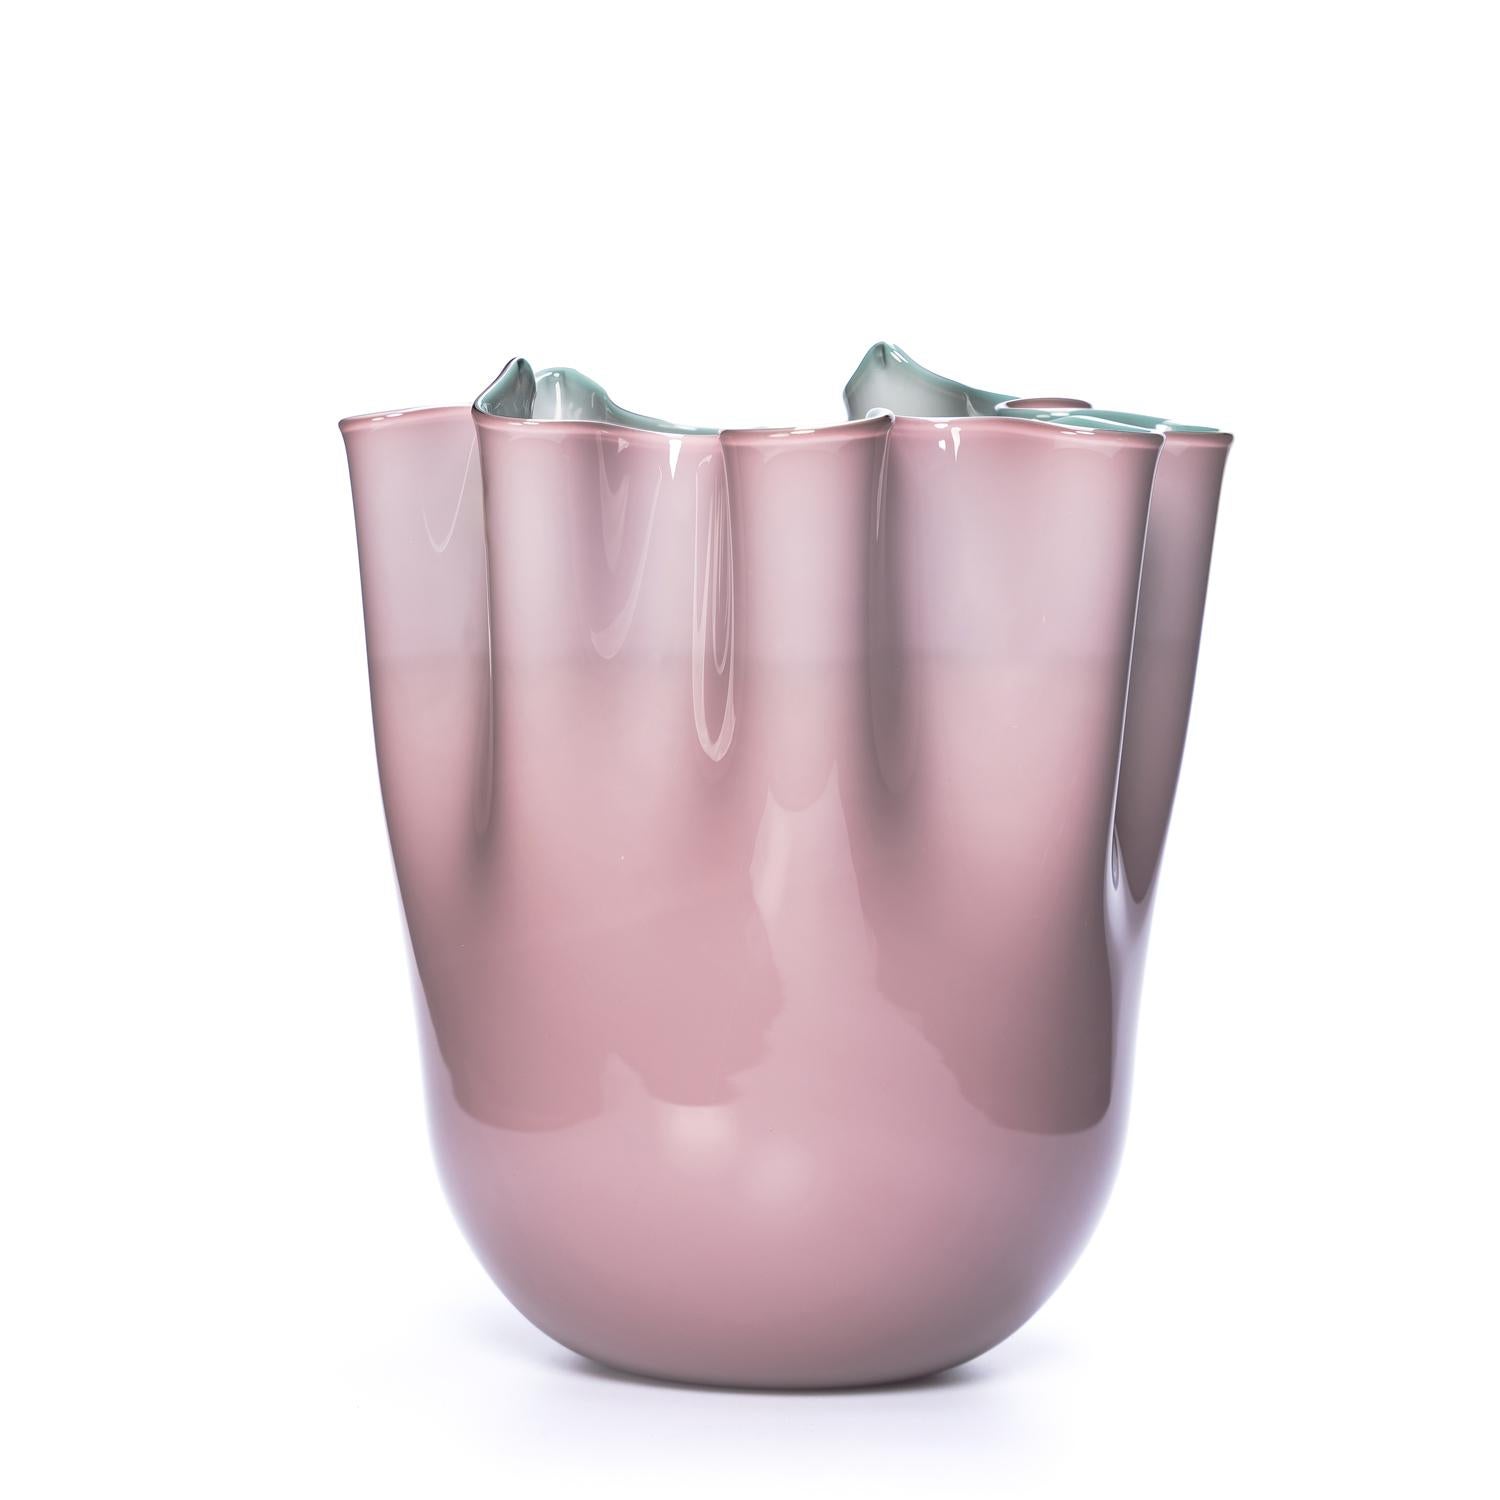 Wir freuen uns, Ihnen unsere neueste Kreation vorstellen zu können - diese exquisite Vase aus Murano-Glaskunst. 
Unser Ziel ist es, mit unserer Kunst Emotionen zu wecken, und wir sind stolz darauf, Ihnen diese atemberaubende Vase zu präsentieren,